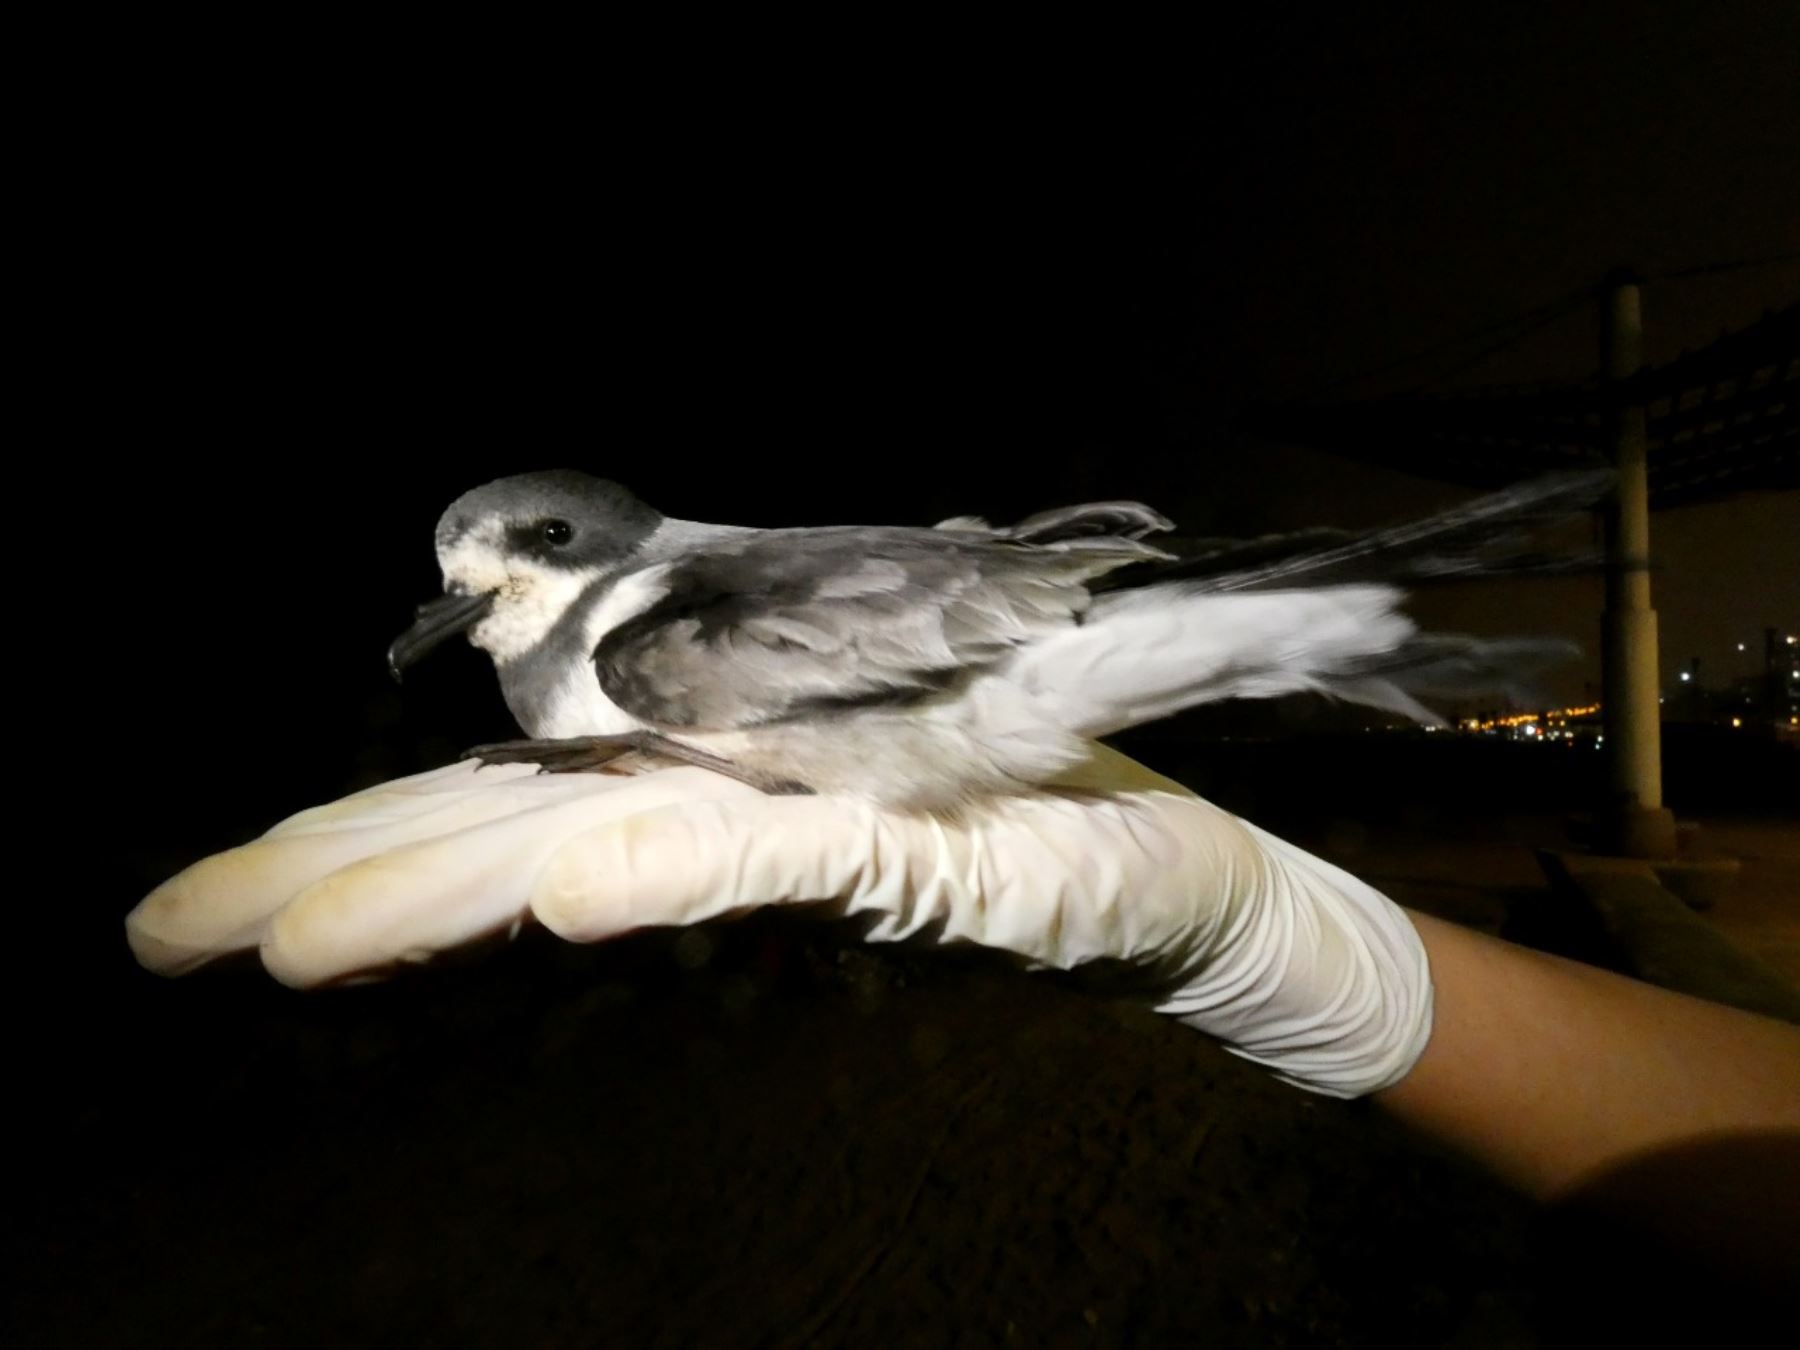 Aves migratorias: conoce cómo impacta la contaminación lumínica en estas especies